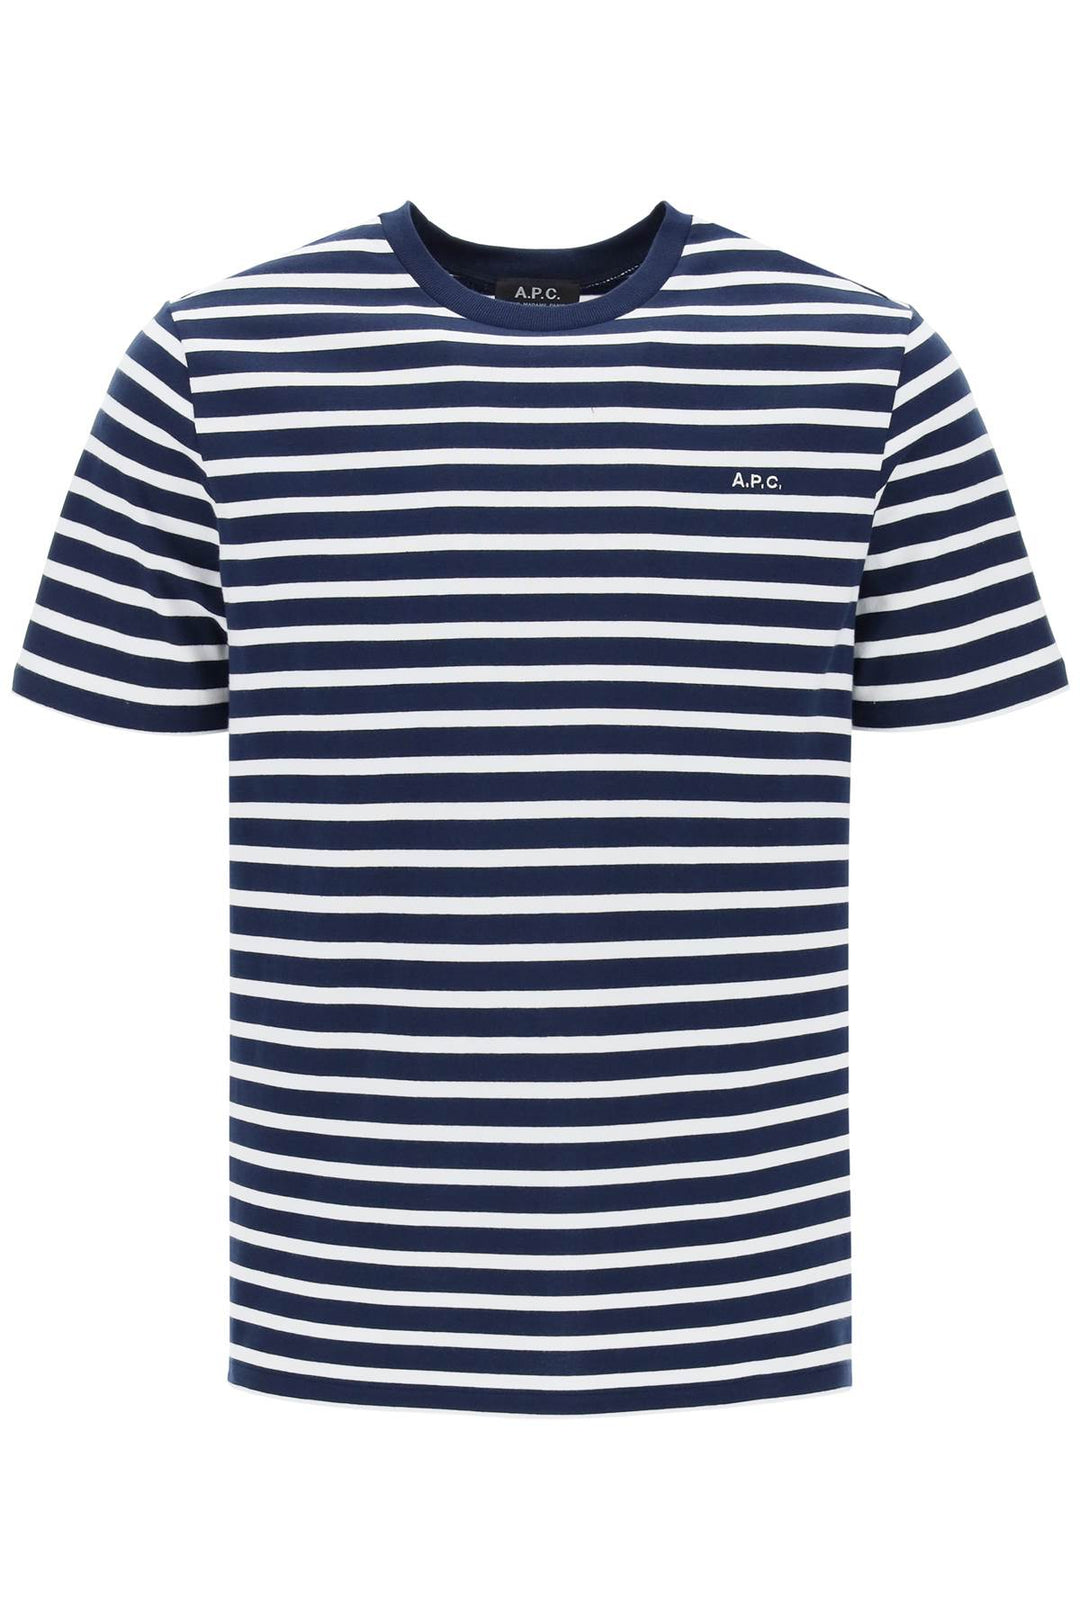 A.p.c. emilien striped t-shirt-0